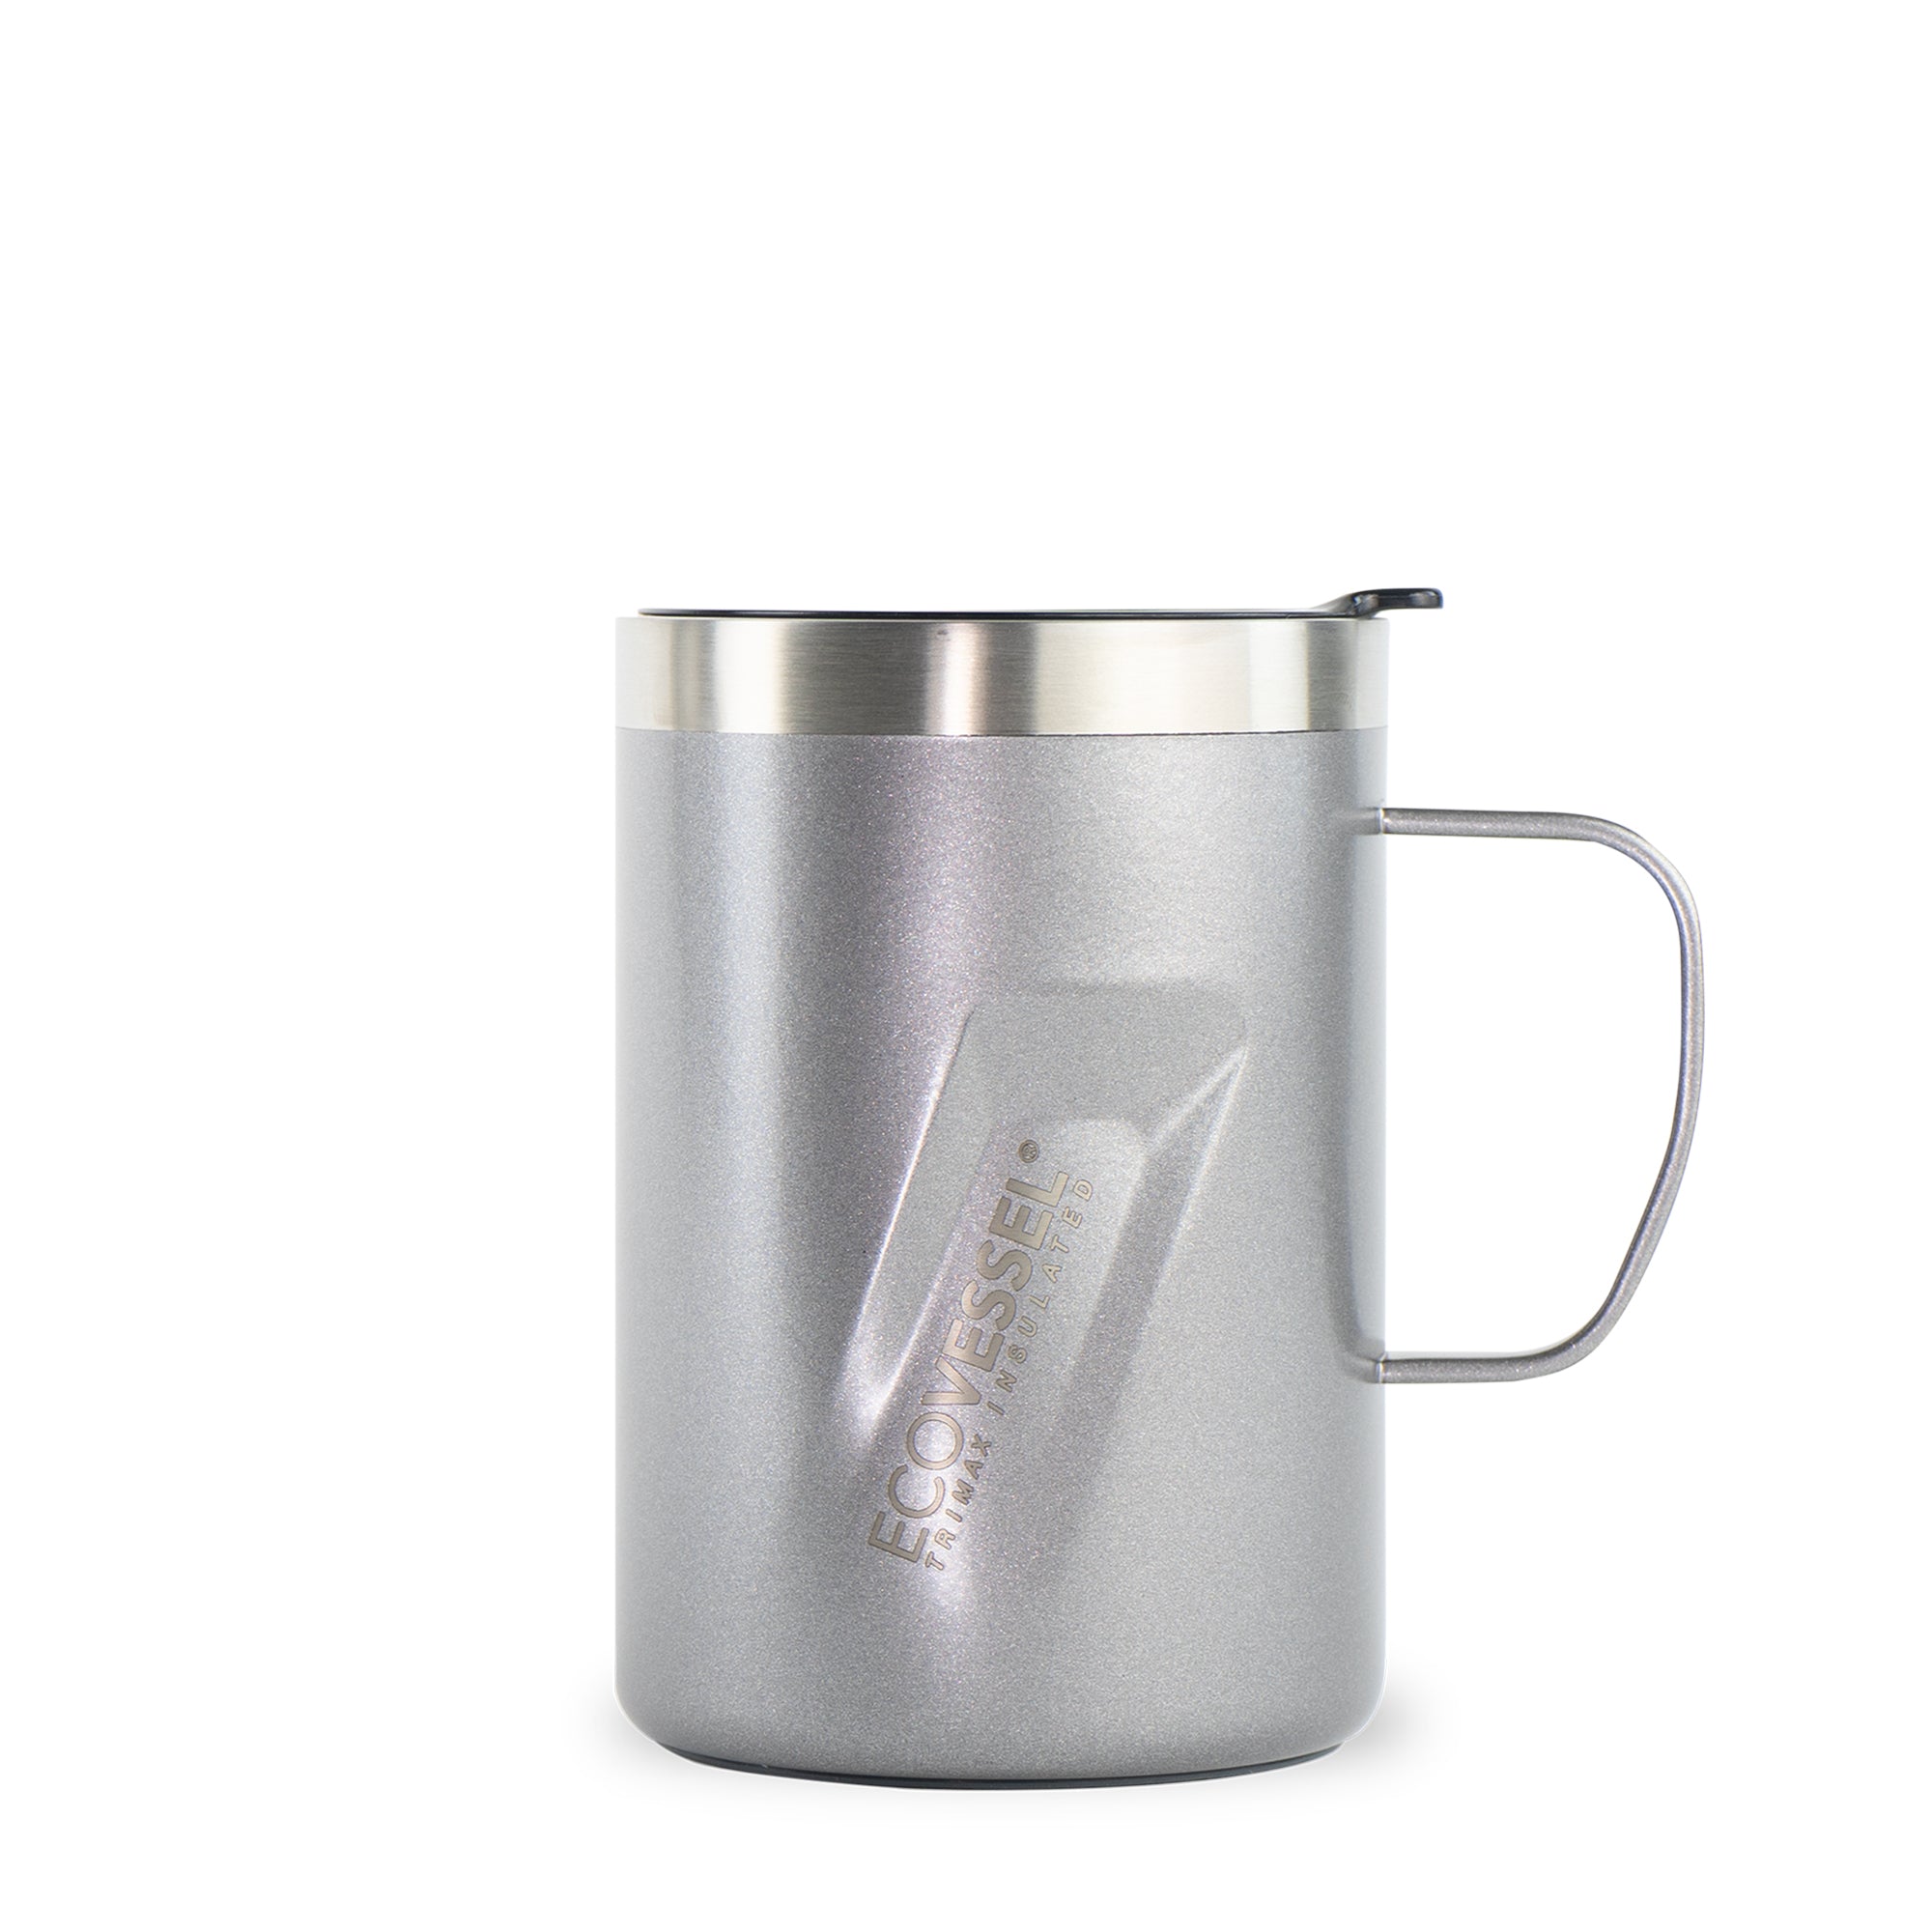 Keurig Stainless Steel Travel Mug, Silver/Black, 12 oz